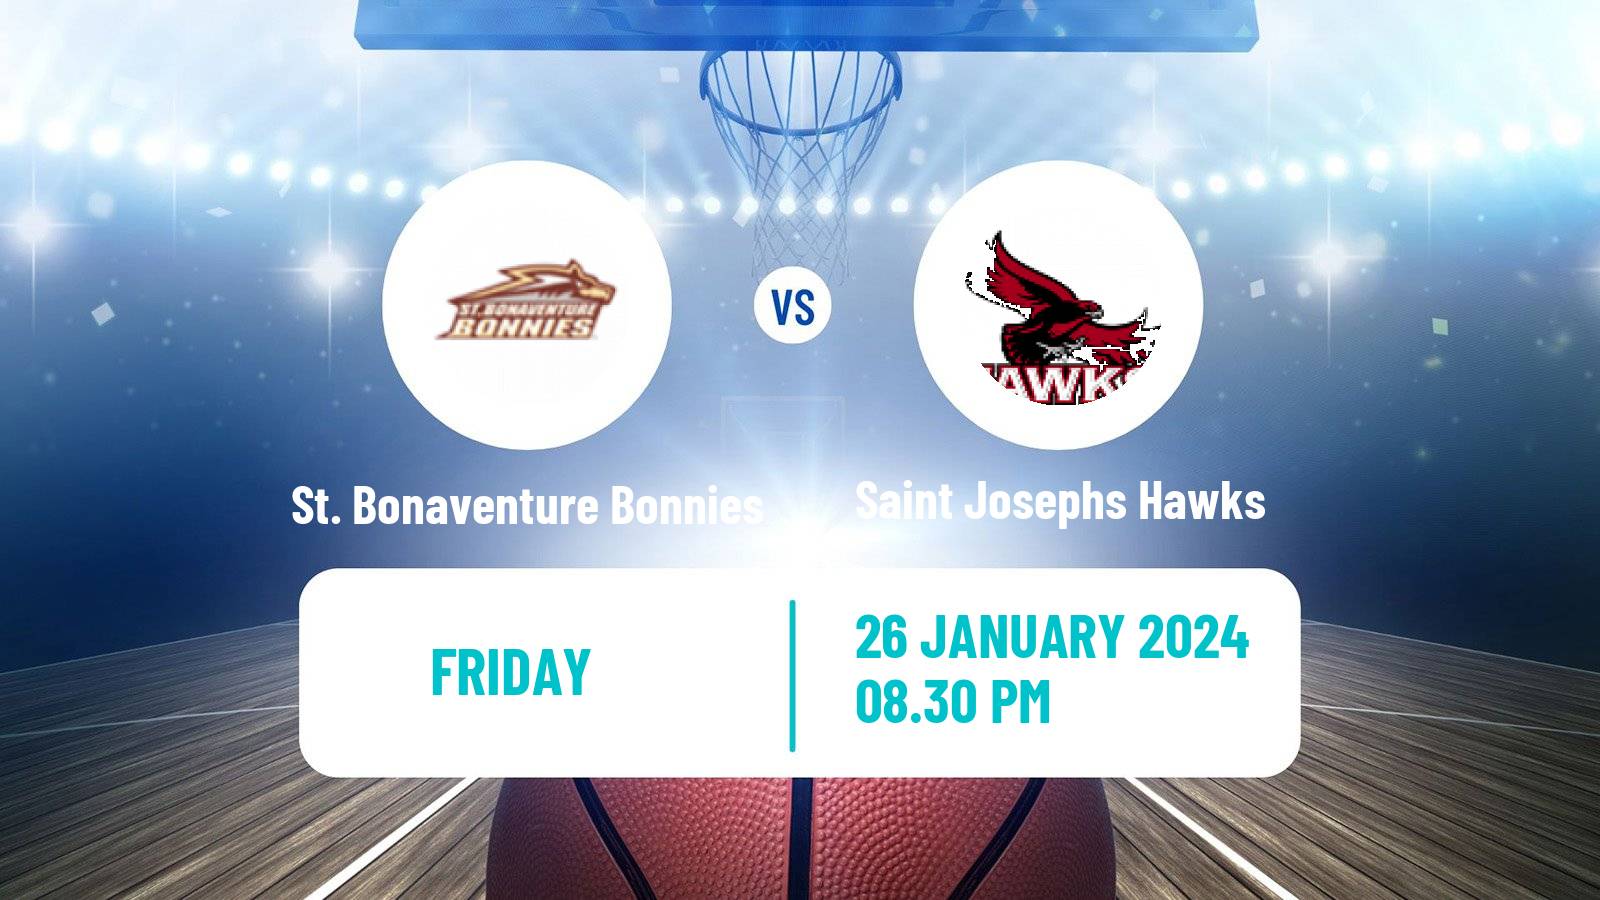 Basketball NCAA College Basketball St. Bonaventure Bonnies - Saint Josephs Hawks